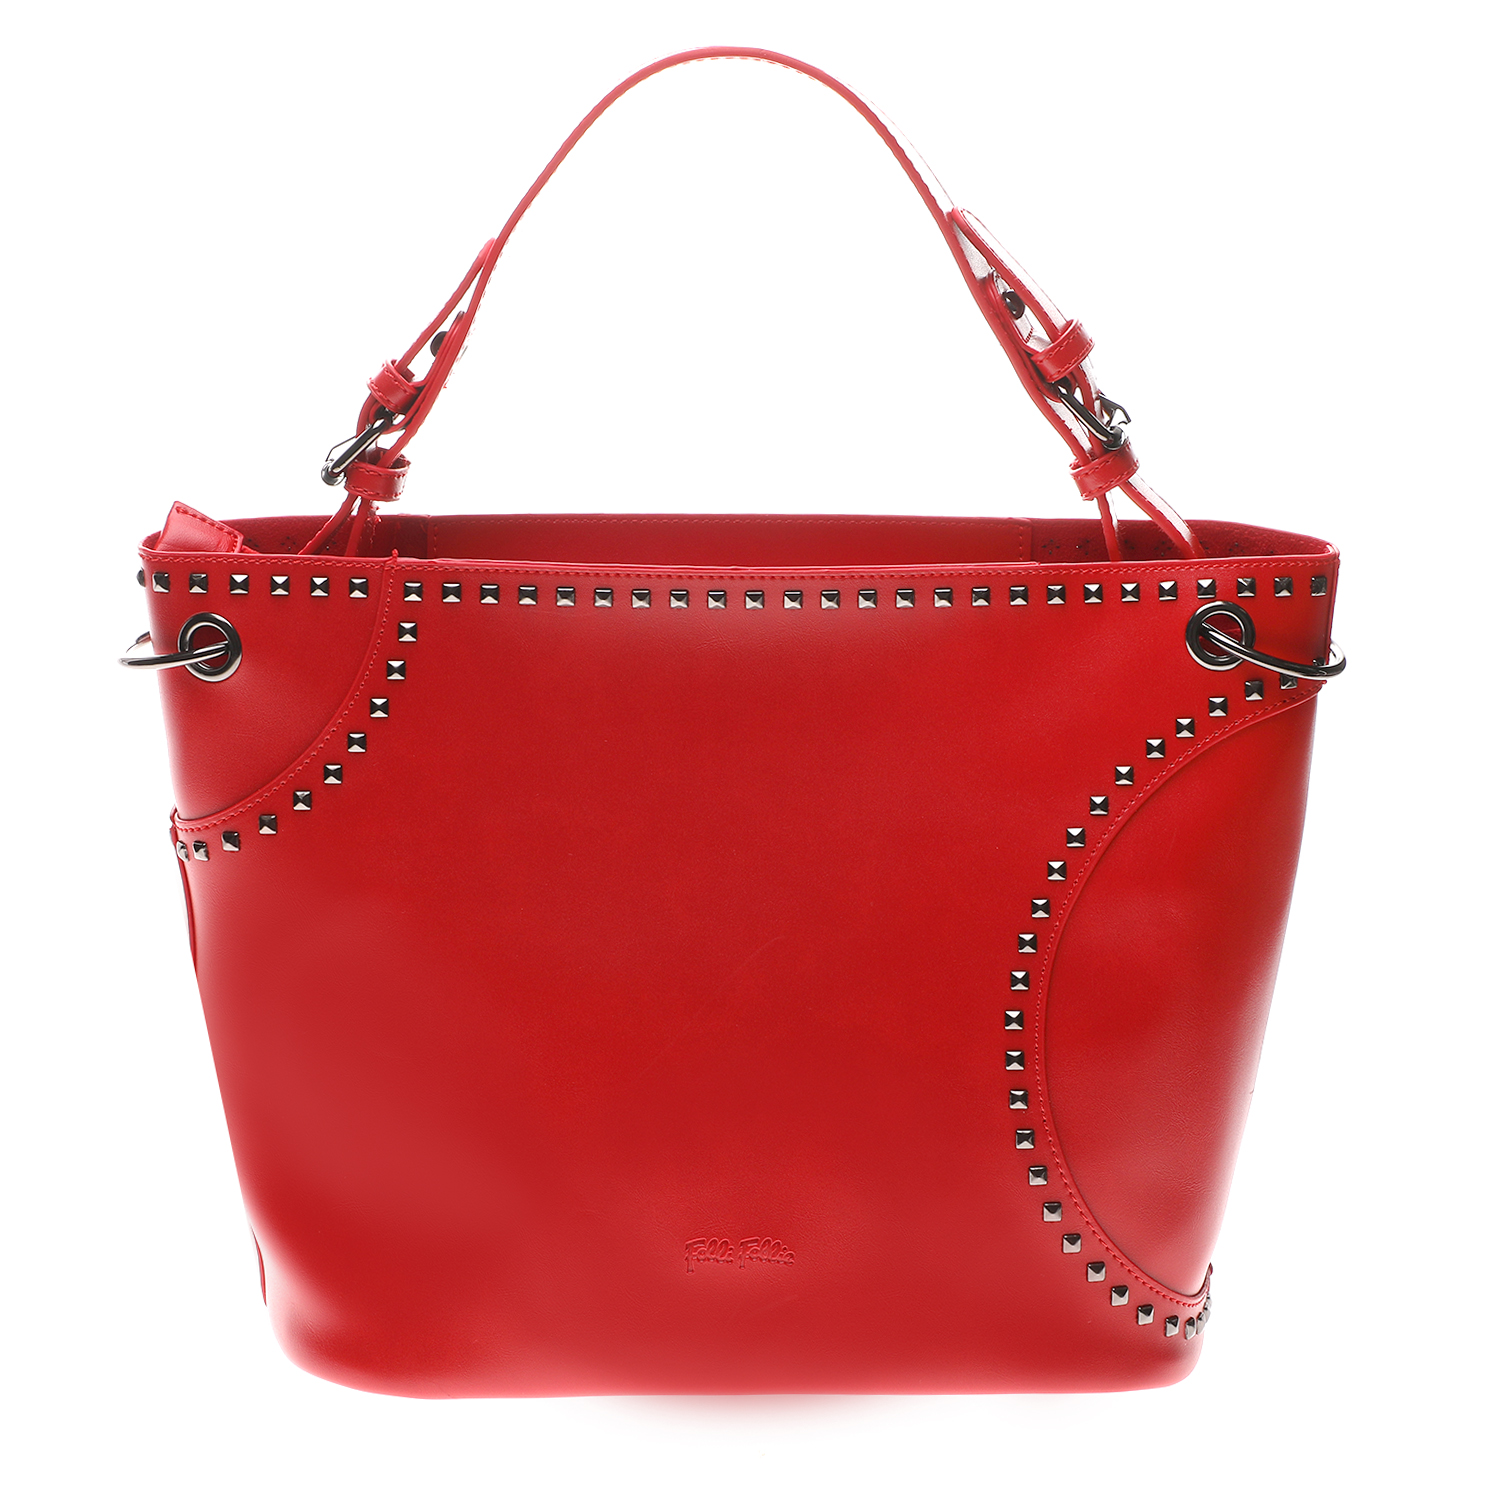 FOLLI FOLLIE - Γυναικεία τσάντα ώμου FOLLI FOLLIE κόκκινη Γυναικεία/Αξεσουάρ/Τσάντες-Σακίδια/Ωμου